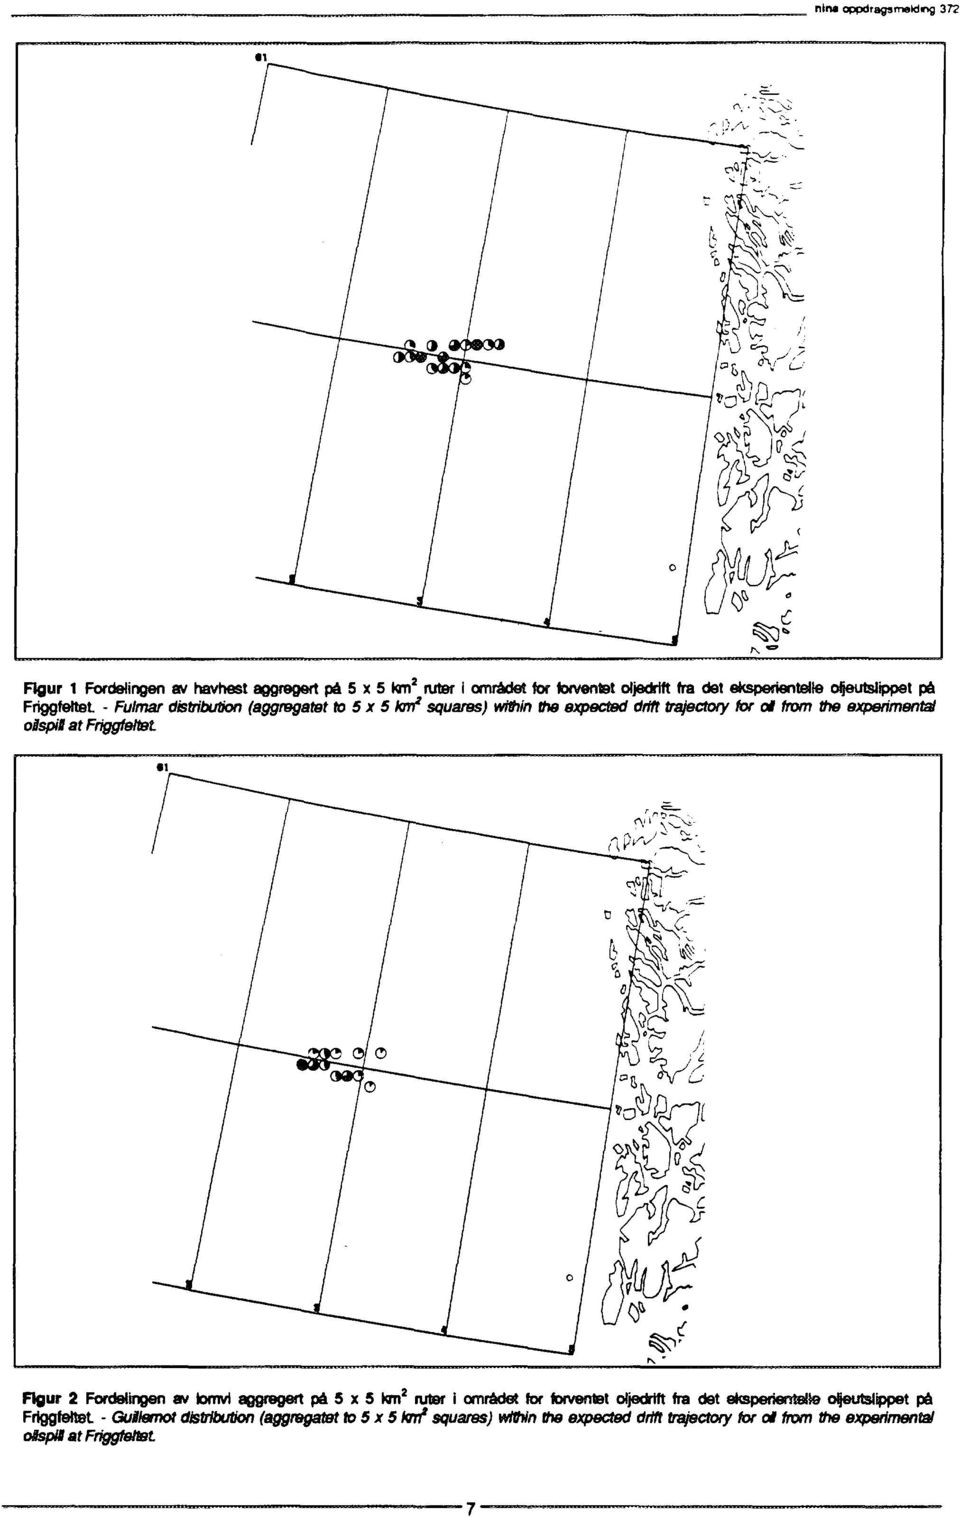 experimental osspil at Friggfeltet Rgur 2 Fordelingen av lomvi aggrogert på 5 x 5 km 2 ruter i området for forventet oljedrtft fra det eksperientøte